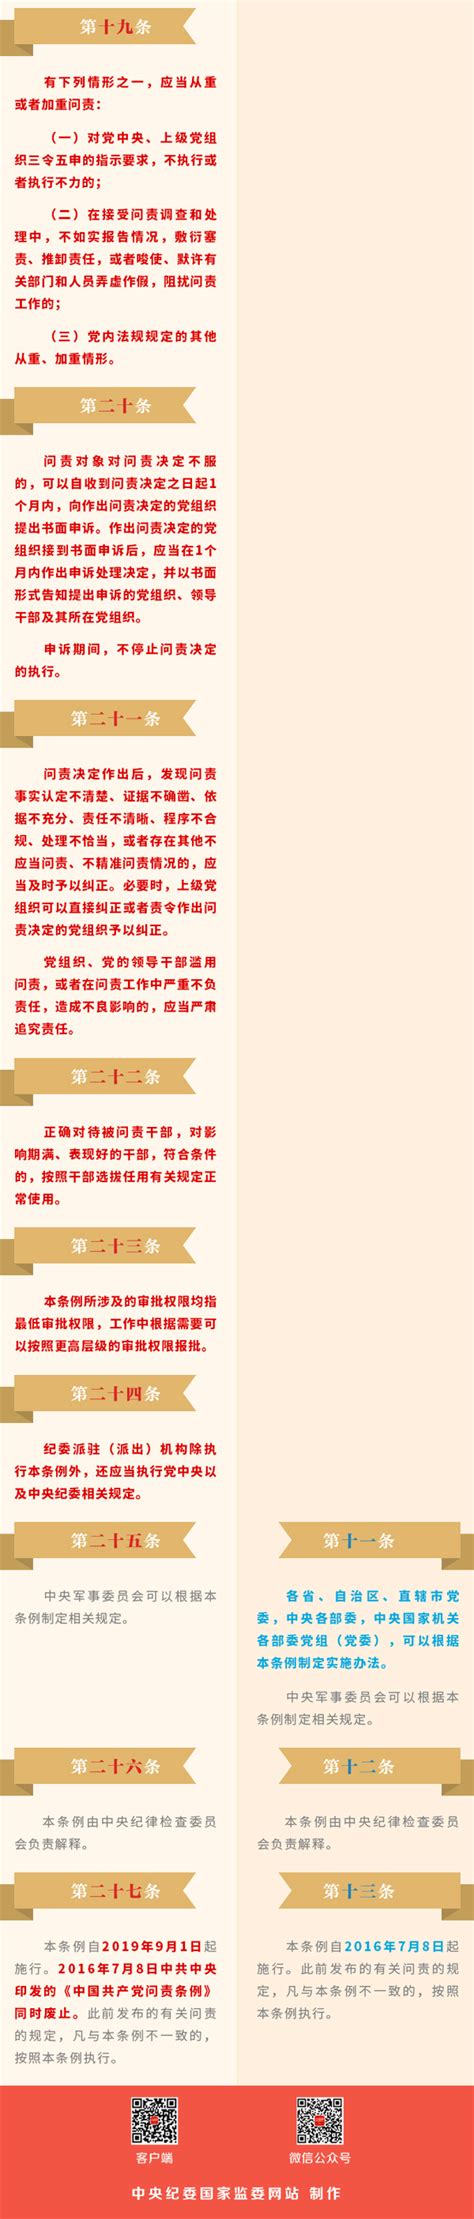 《中国共产党问责条例》修订前后对照表--反腐倡廉-人民网